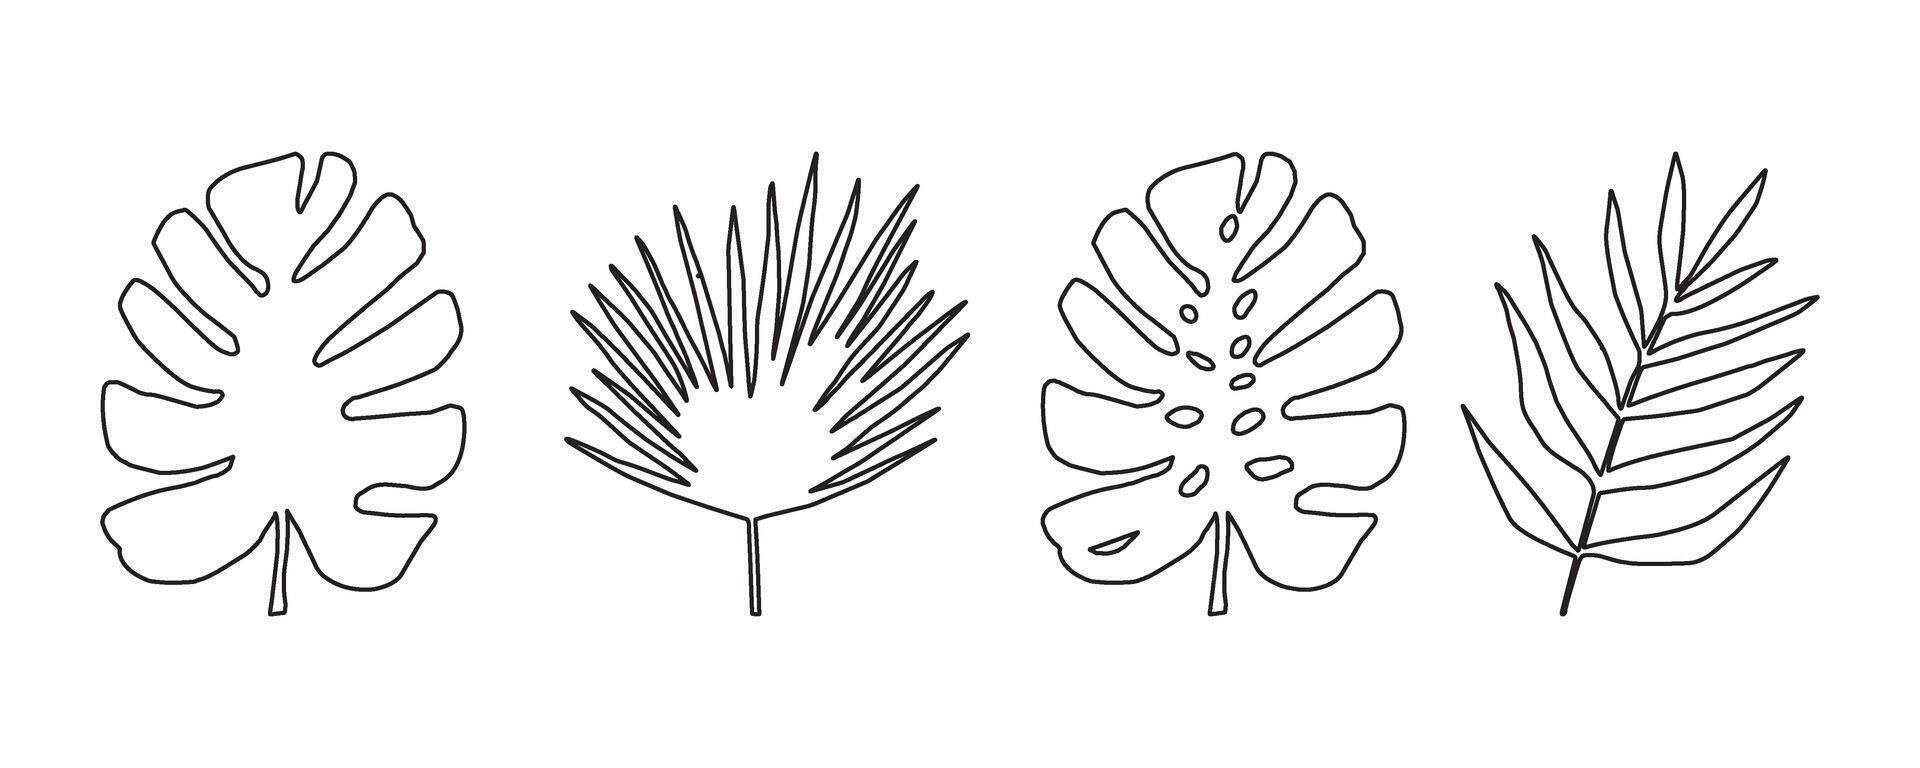 conjunto de monochore siluetas de tropical hojas. vector botánico ilustraciones, floral elementos, monstruo, palma hojas. mano dibujado planta para decoración.